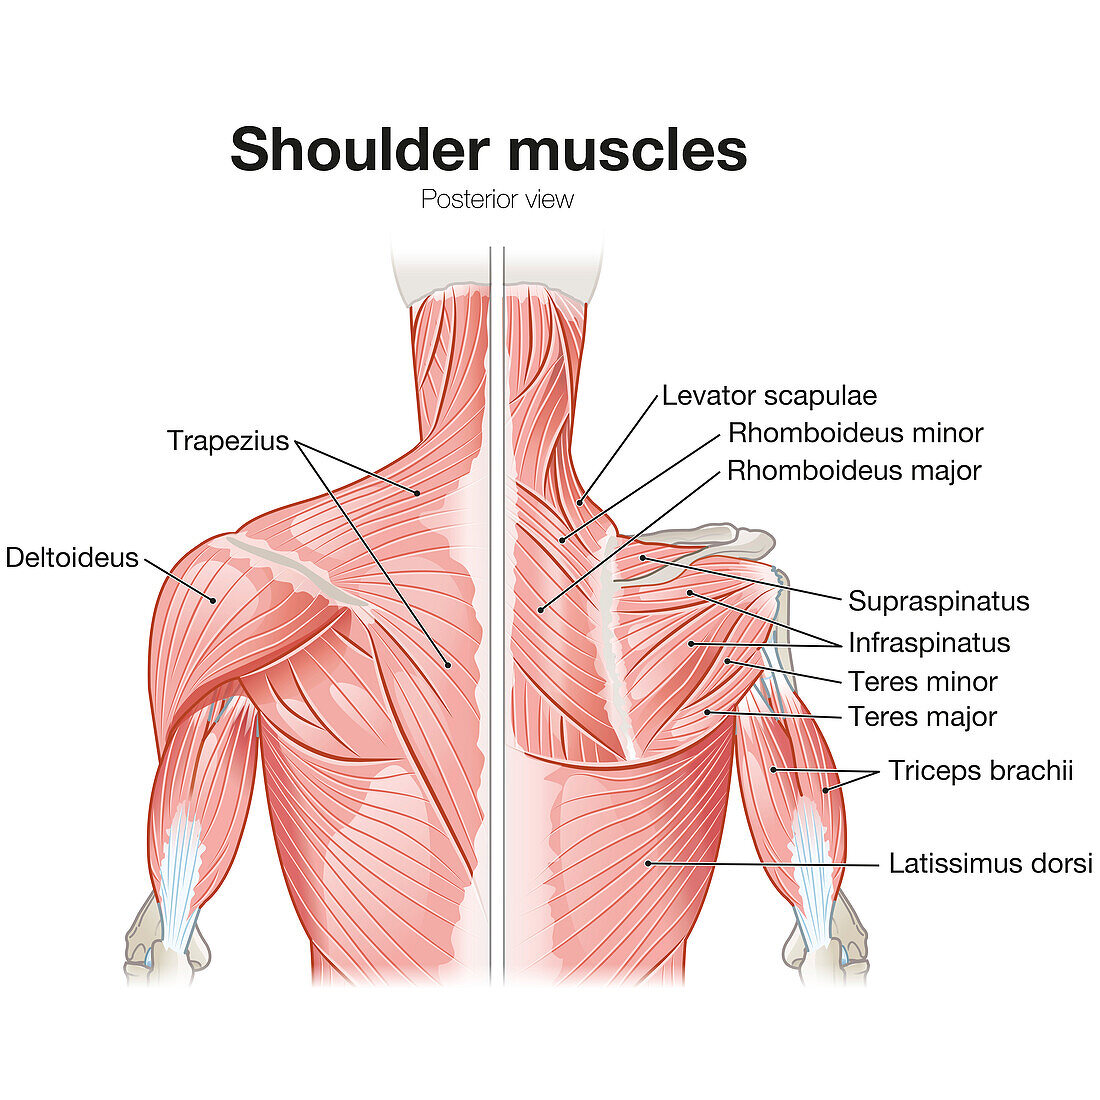 Shoulder muscles, illustration